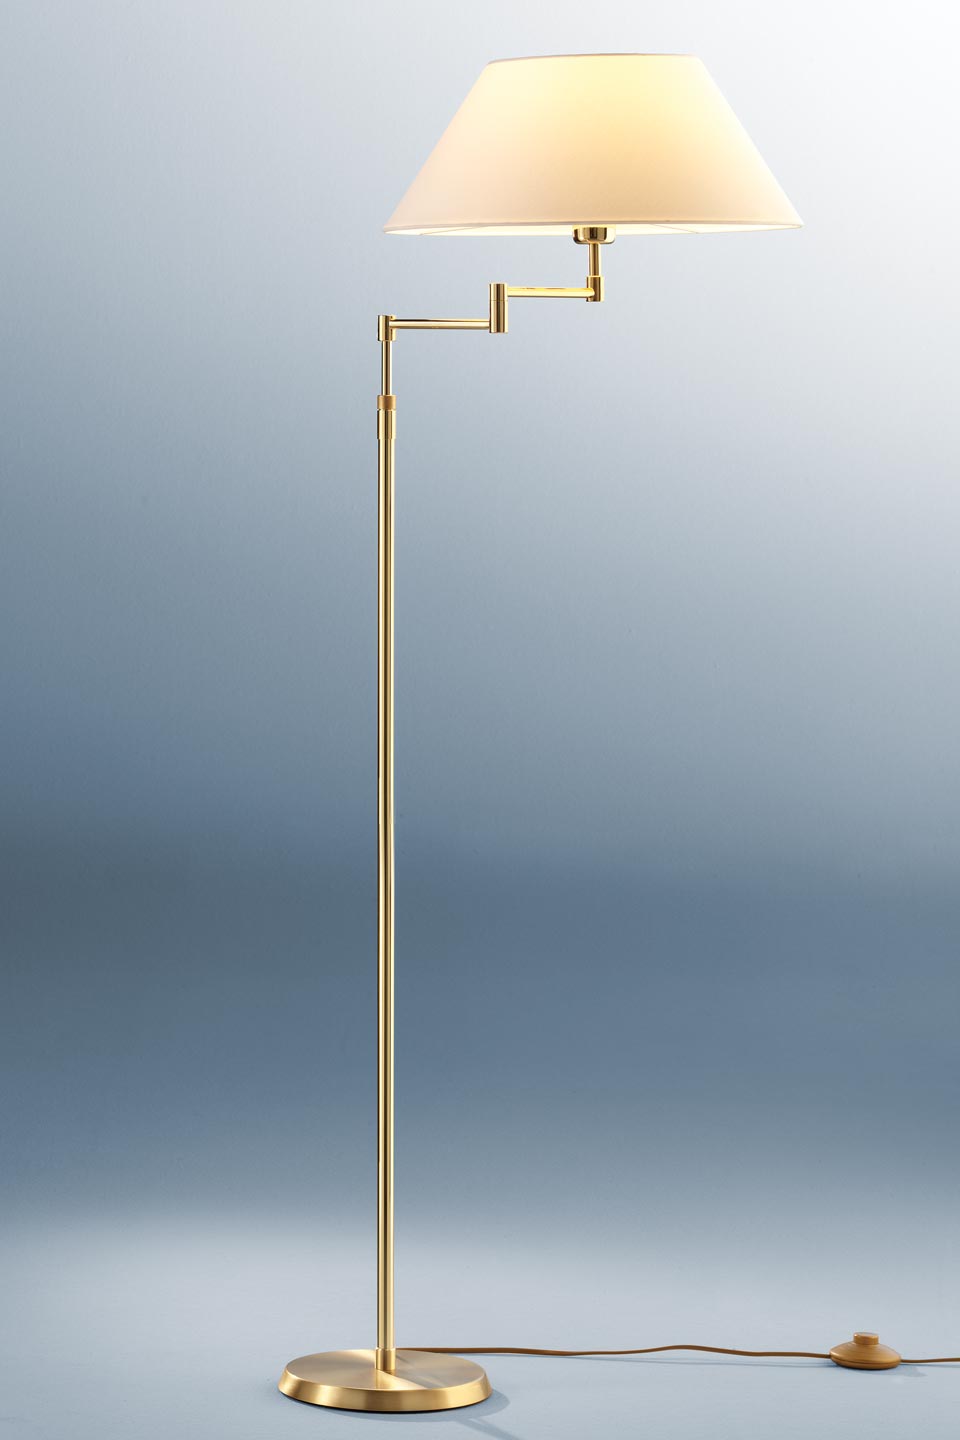 Lampadaire ajustable en hauteur métal doré et abat-jour blanc, Holtkötter